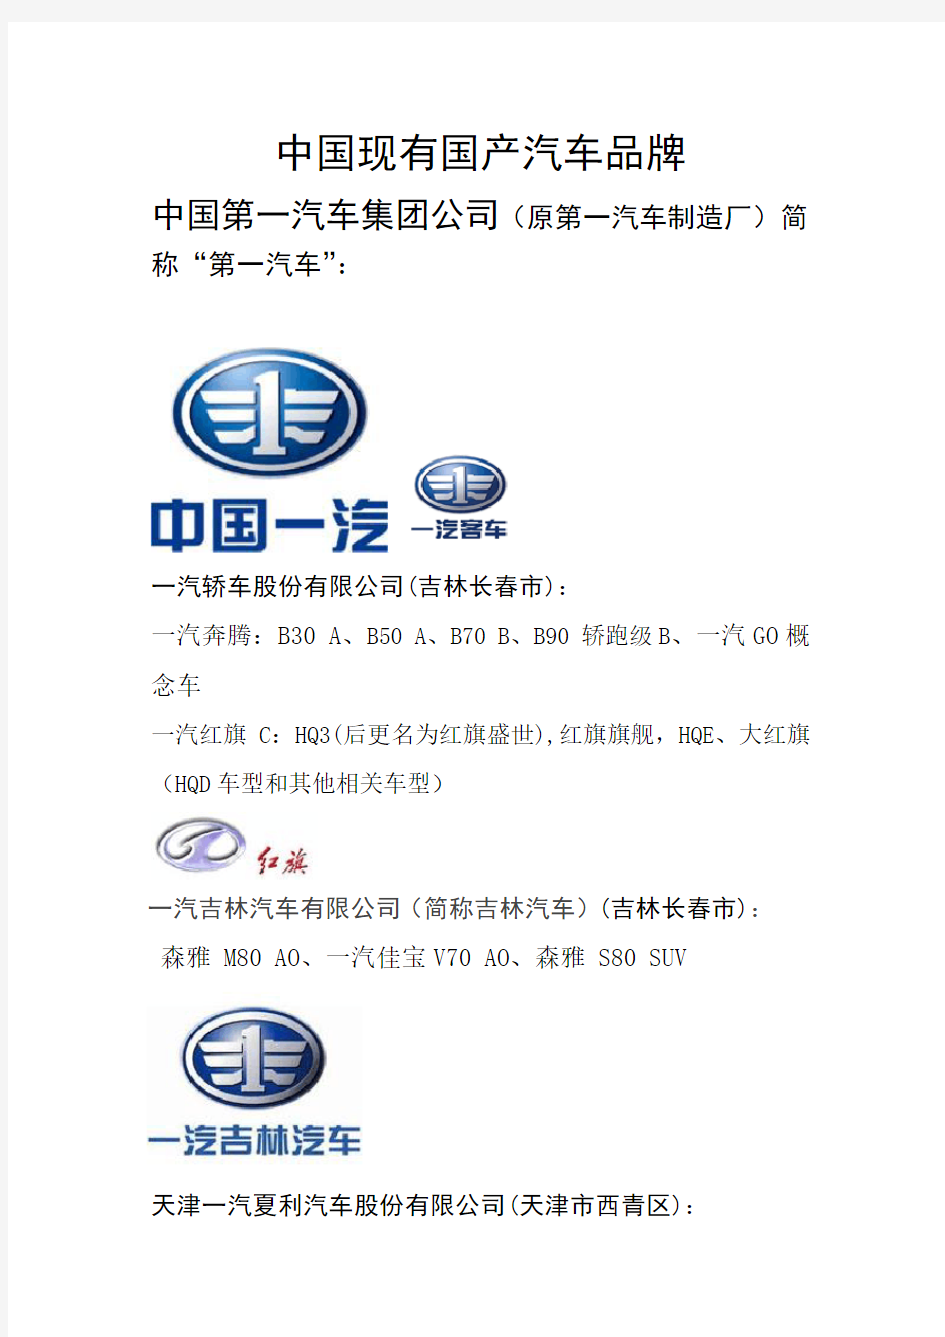 中国现有国产自主汽车品牌